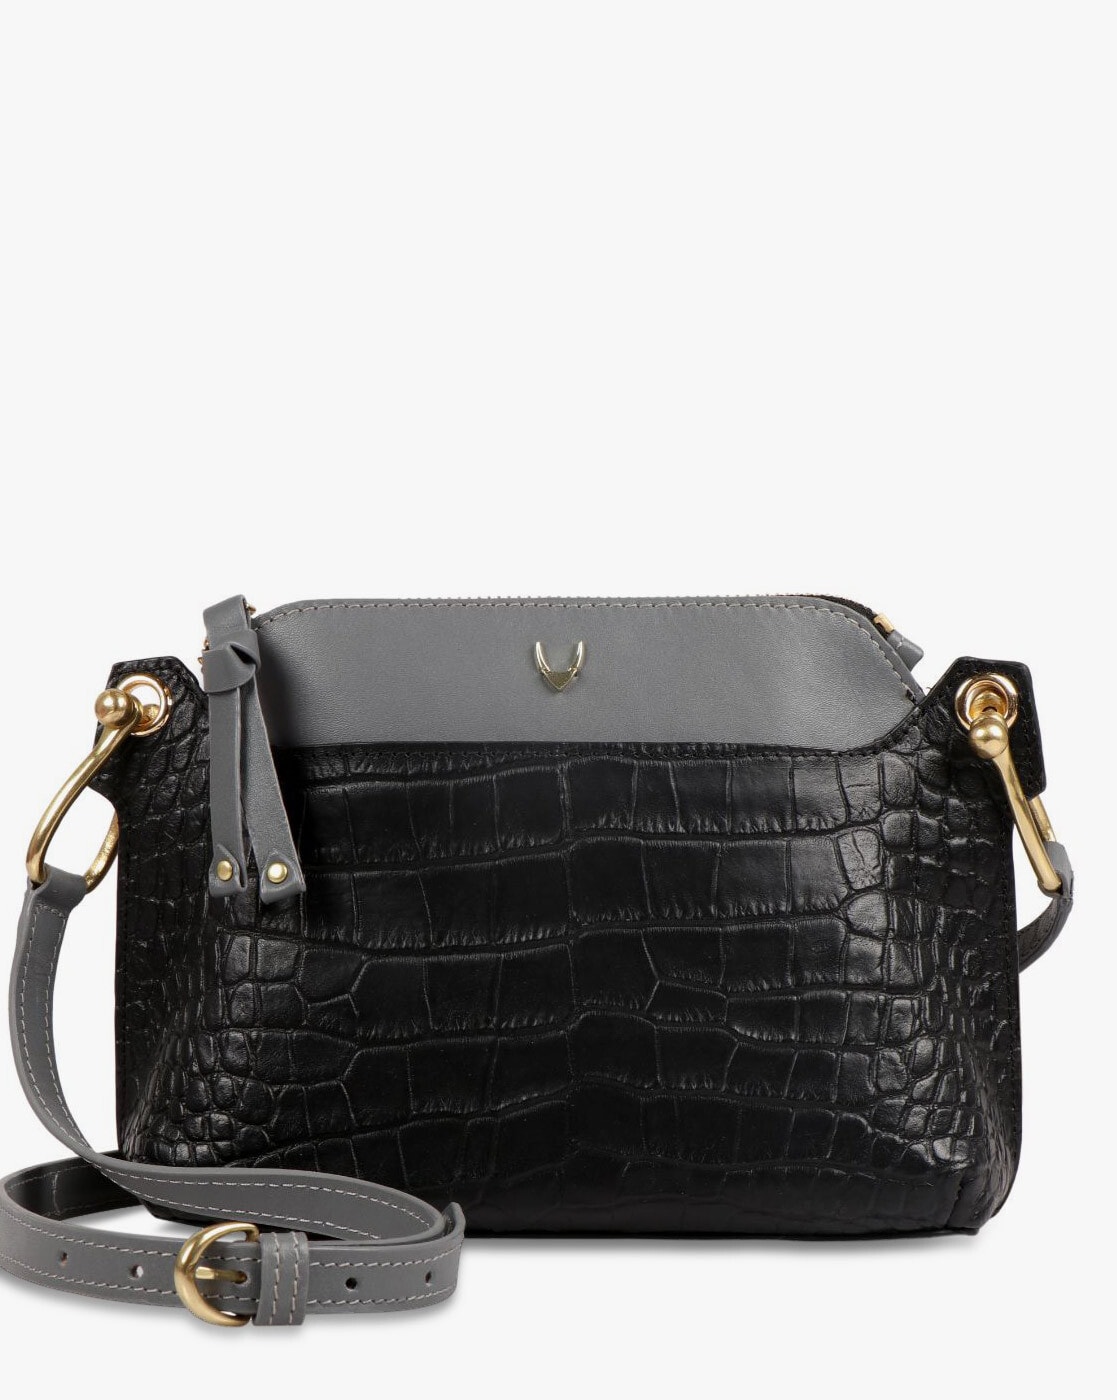 confiar Persona responsable marzo Buy Black Handbags for Women by HIDESIGN Online | Ajio.com